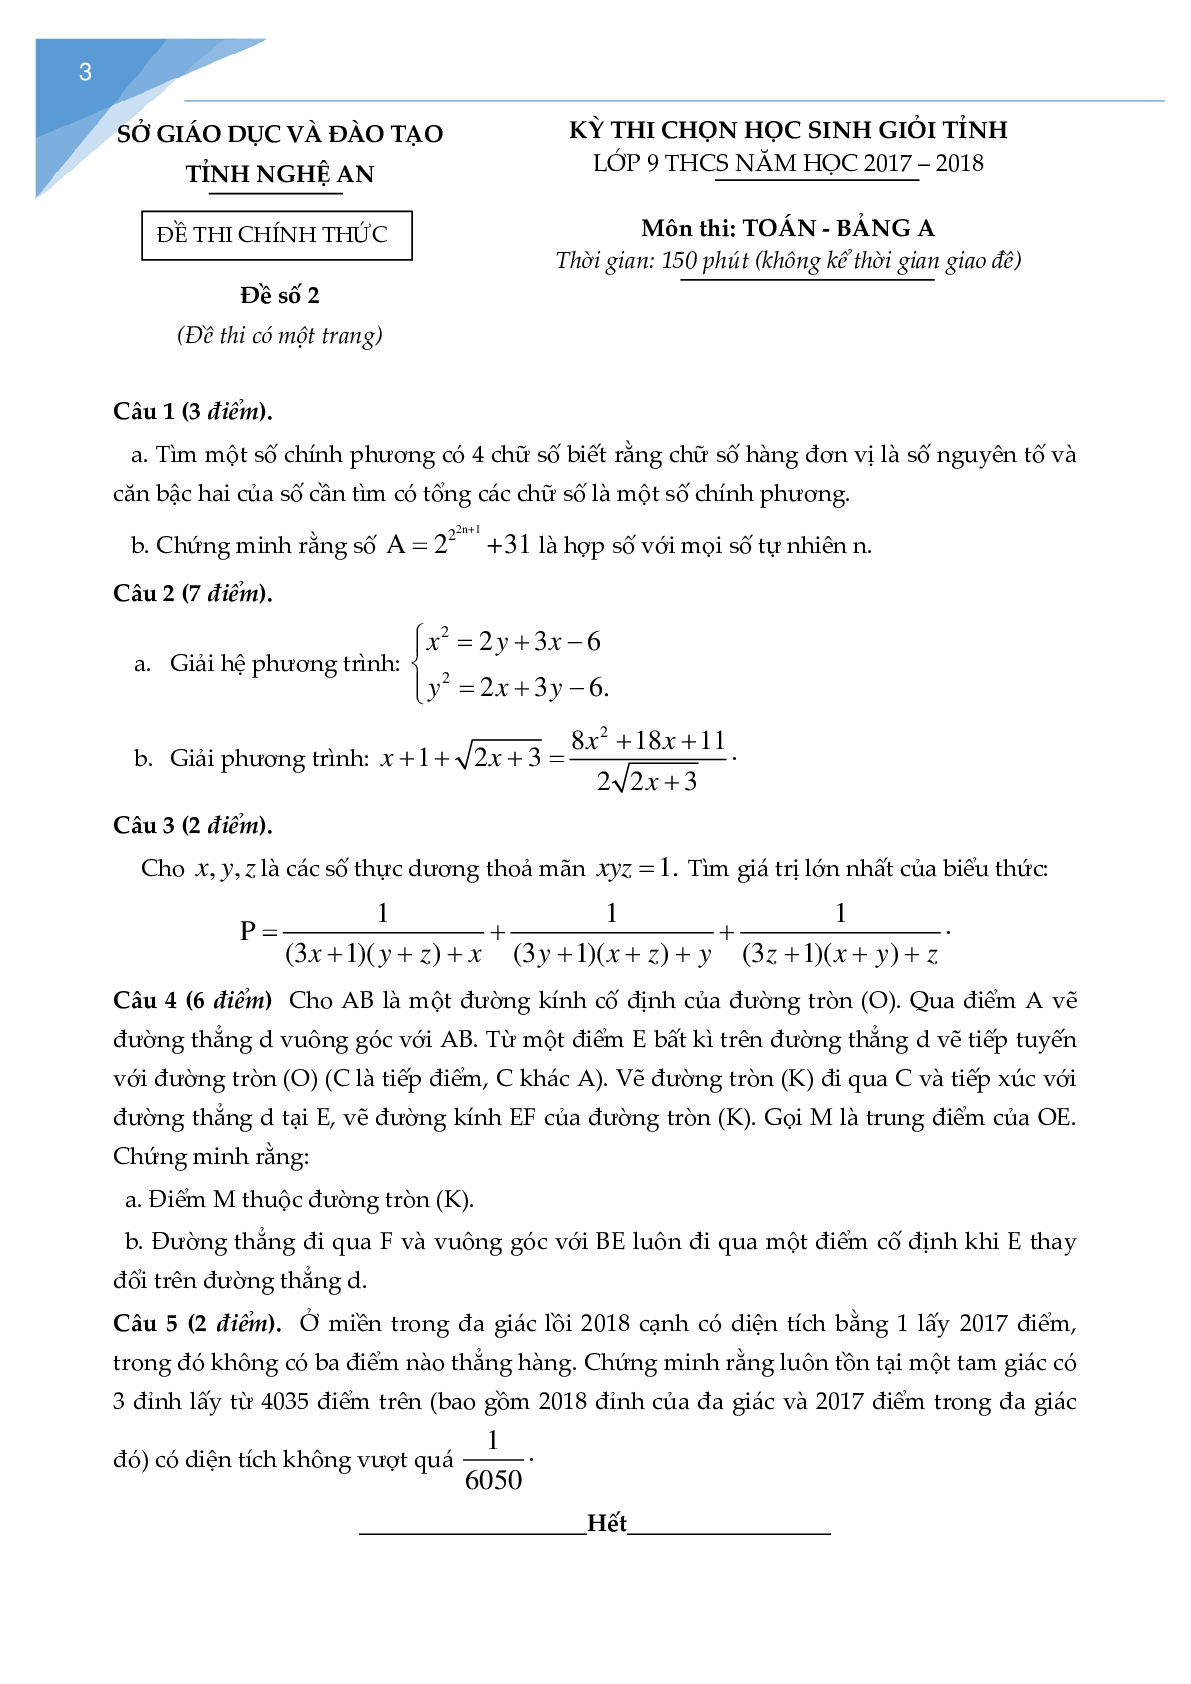 Bộ đề thi học sinh giỏi toán lớp 9 tỉnh Nghệ An (trang 2)